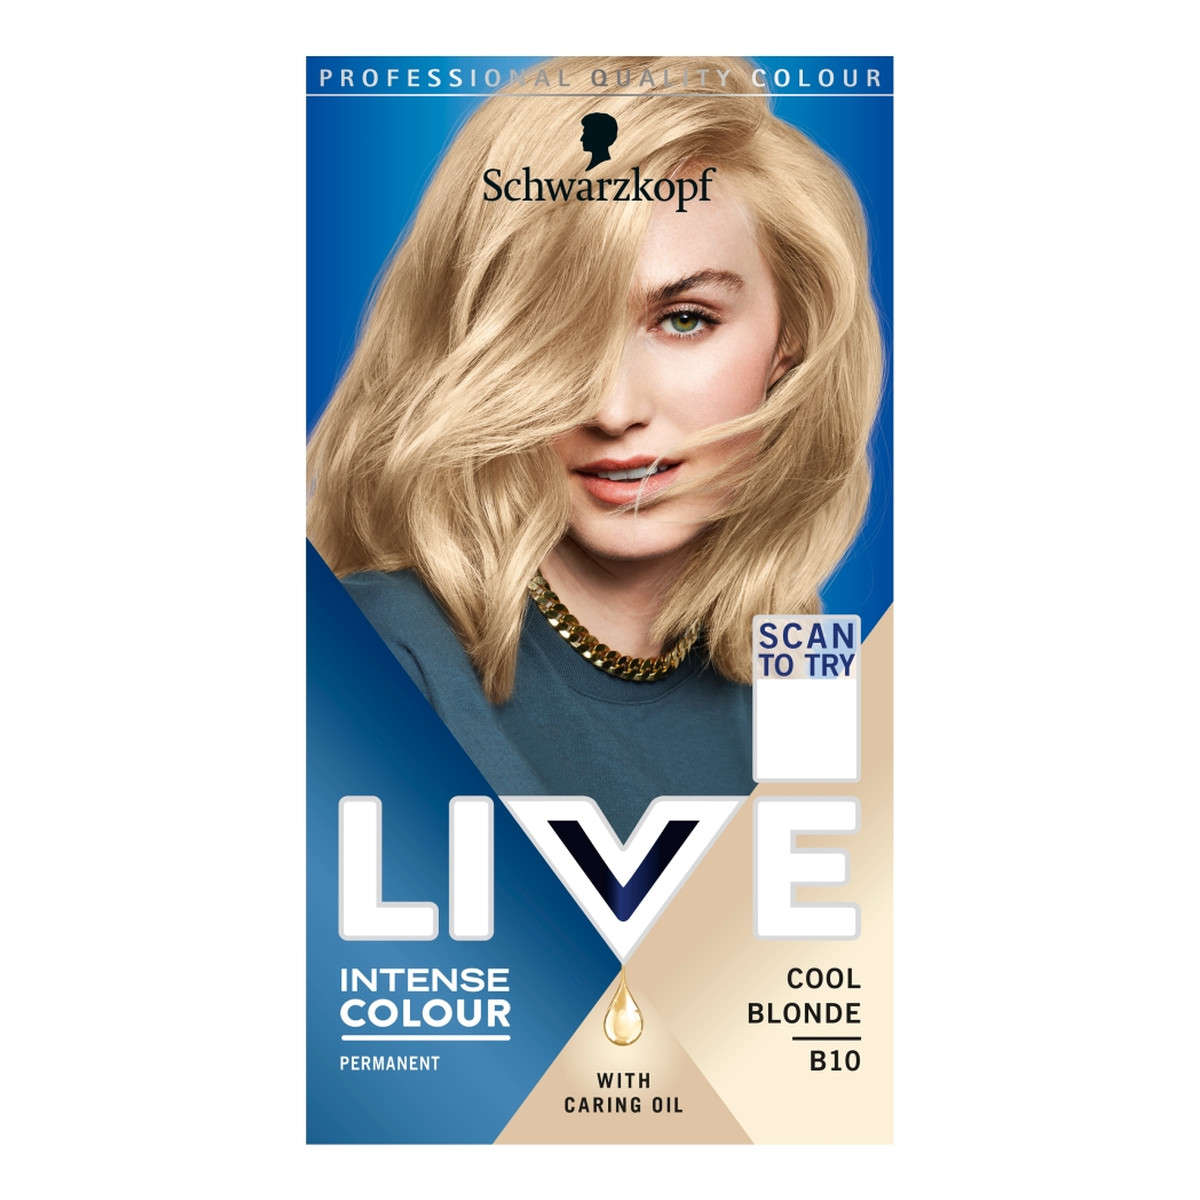 Schwarzkopf Live intense colour farba do włosów b10 cool blonde